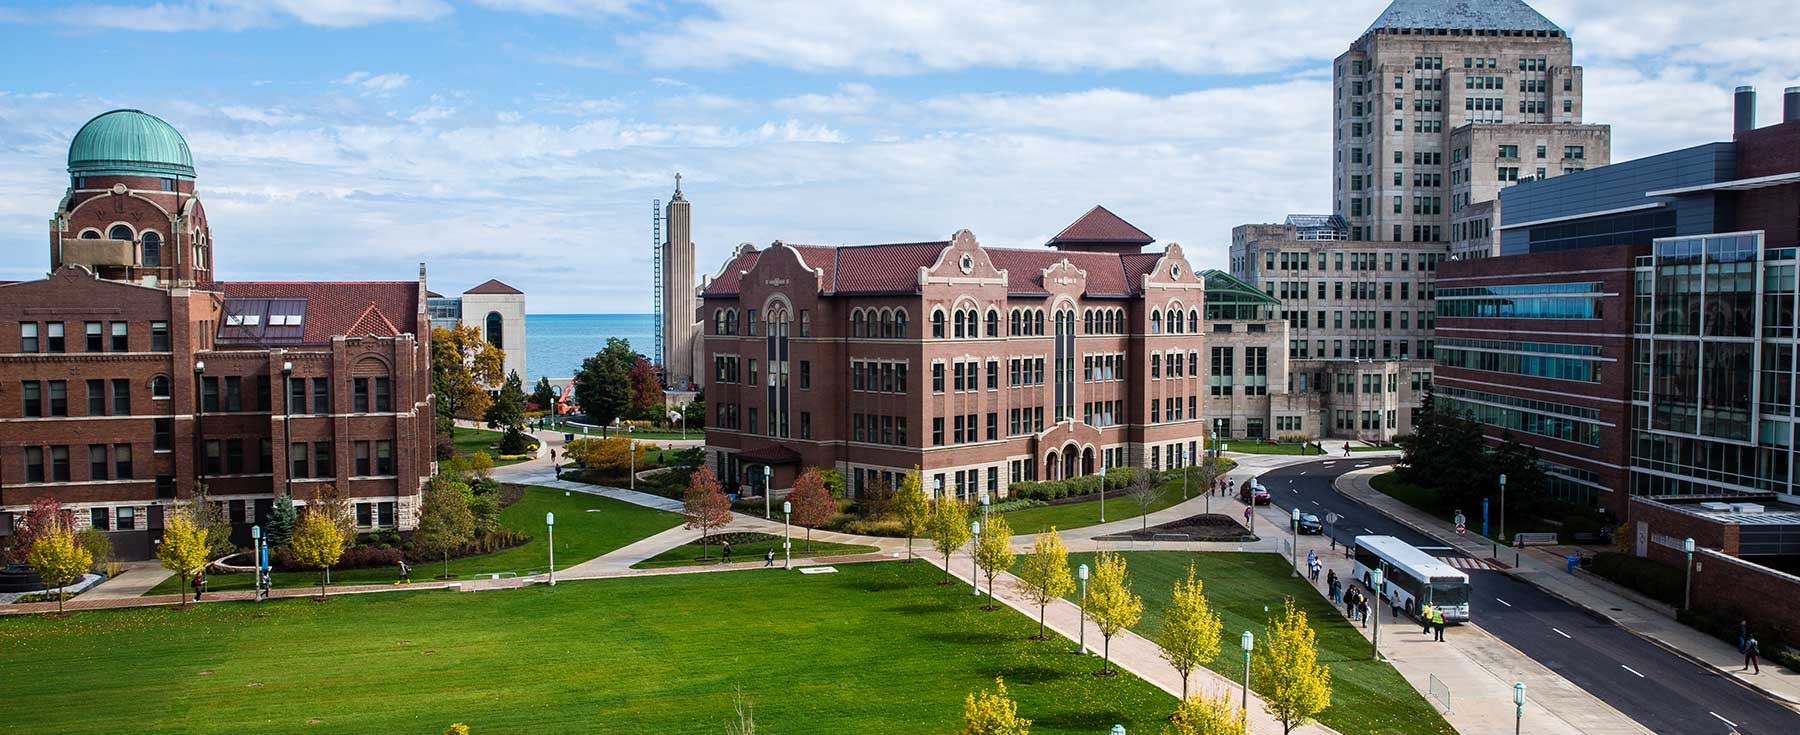 Séjour linguistique Chicago – Loyola University Chicago Campus